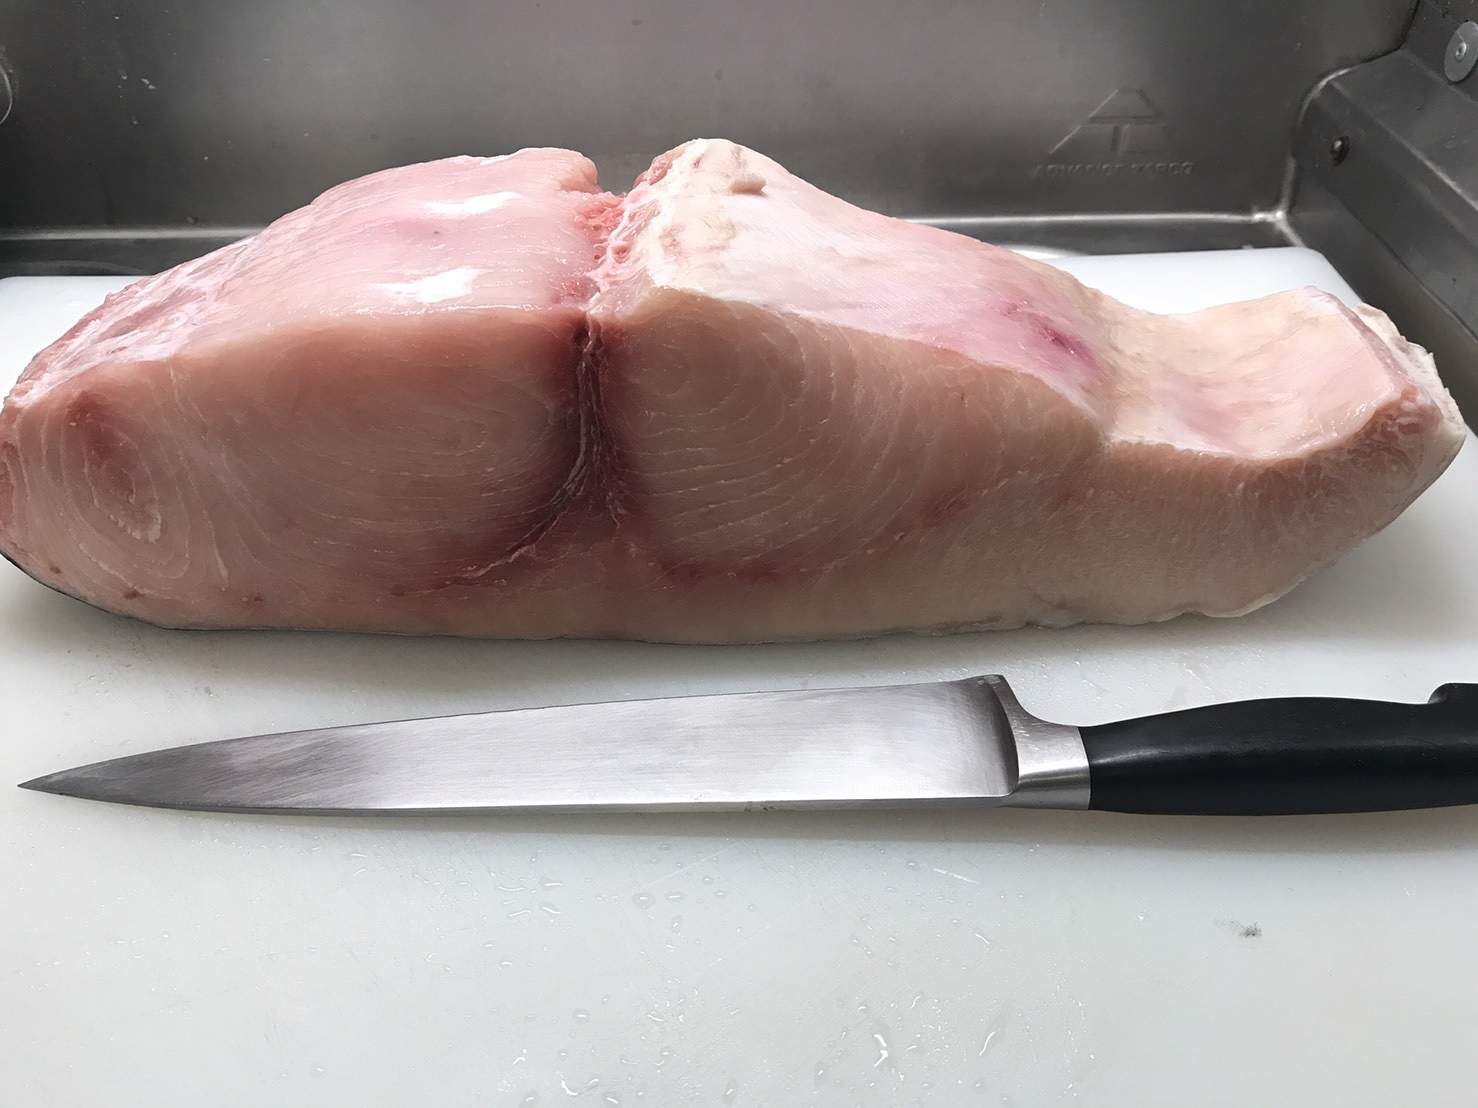 Swordfish Steak